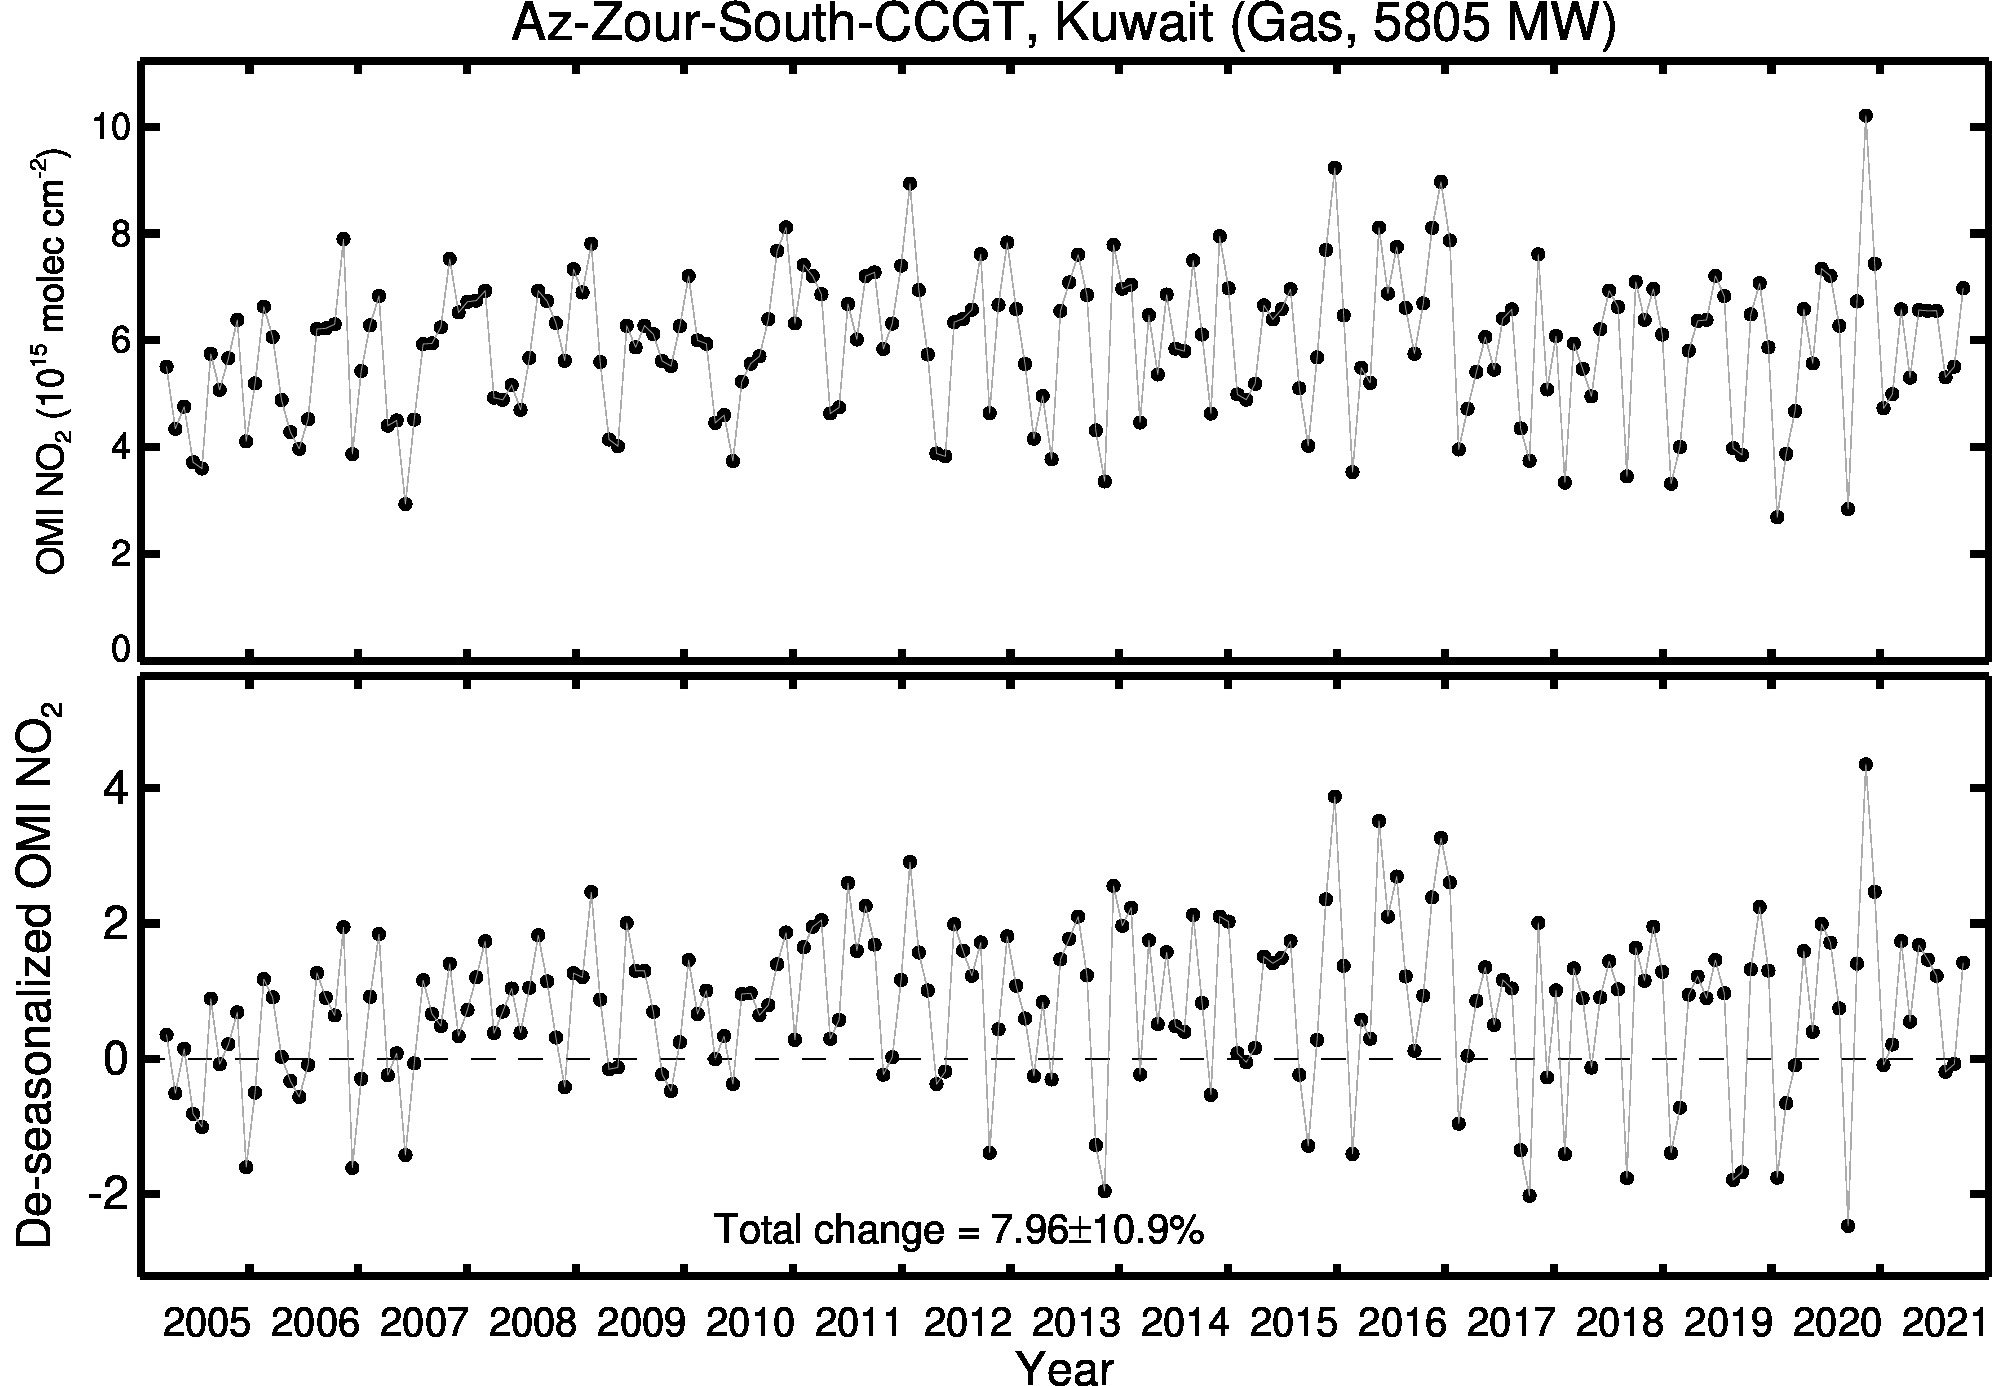 Az Zour South CCGT Line Plot 2005-2021